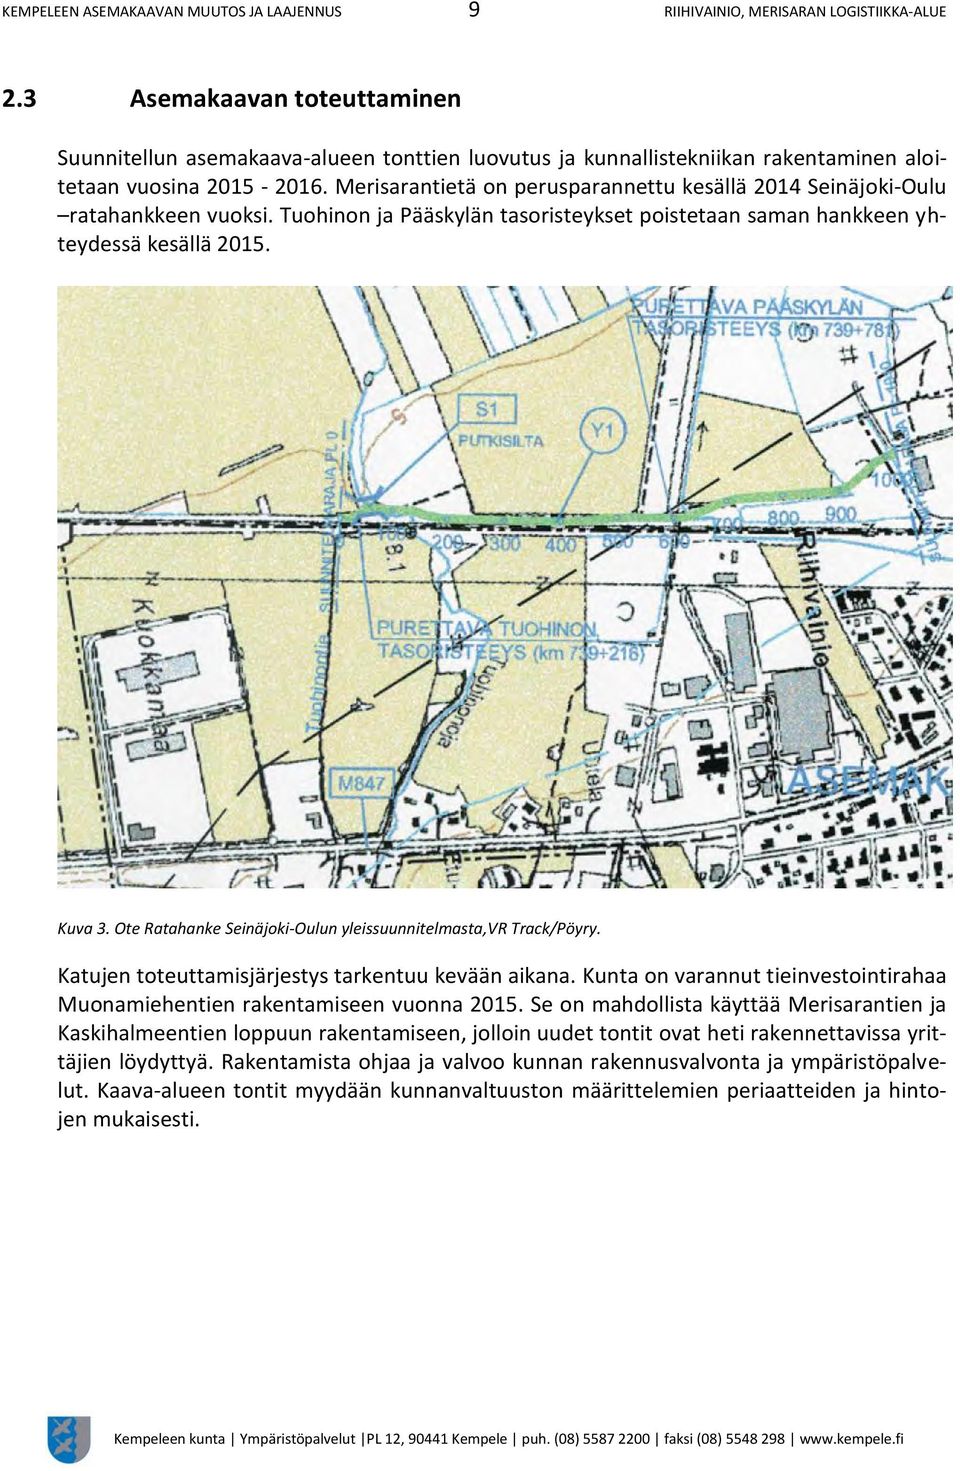 Merisarantietä on perusparannettu kesällä 2014 Seinäjoki-Oulu ratahankkeen vuoksi. Tuohinon ja Pääskylän tasoristeykset poistetaan saman hankkeen yhteydessä kesällä 2015. Kuva 3.